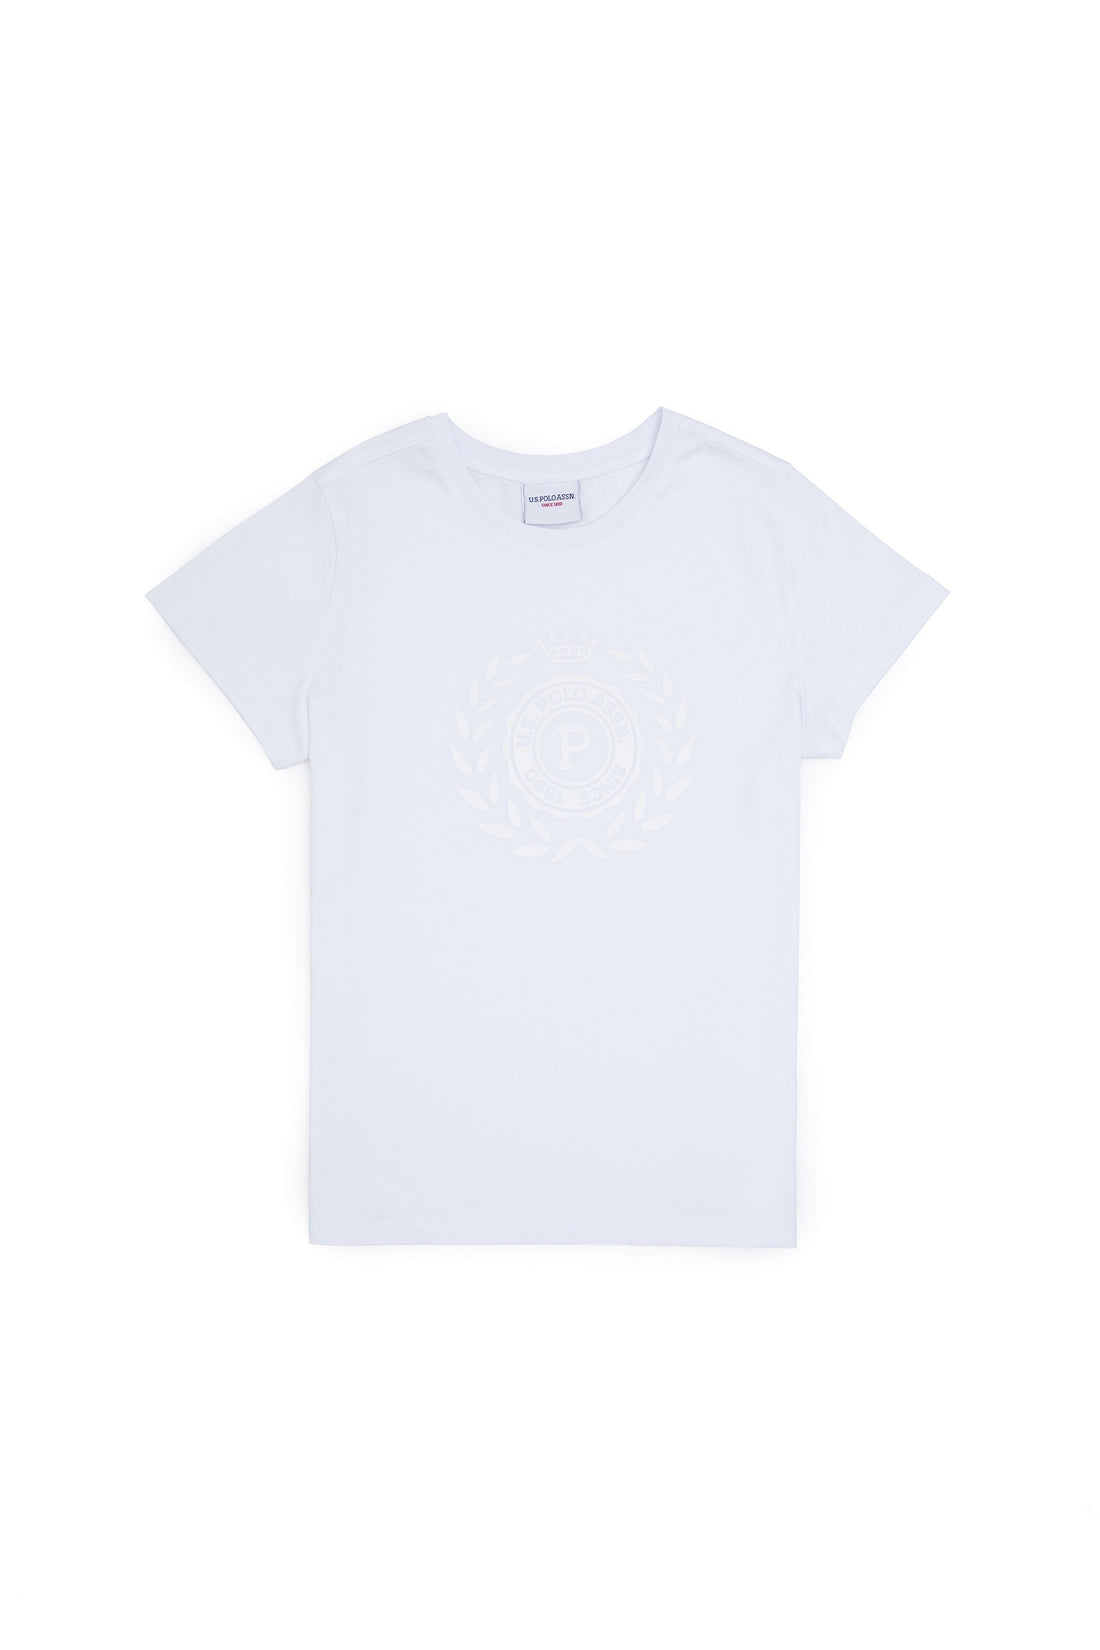 Plain Round Neck Cotton T-Shirt_G083SZ0110 1825538_VR013_02